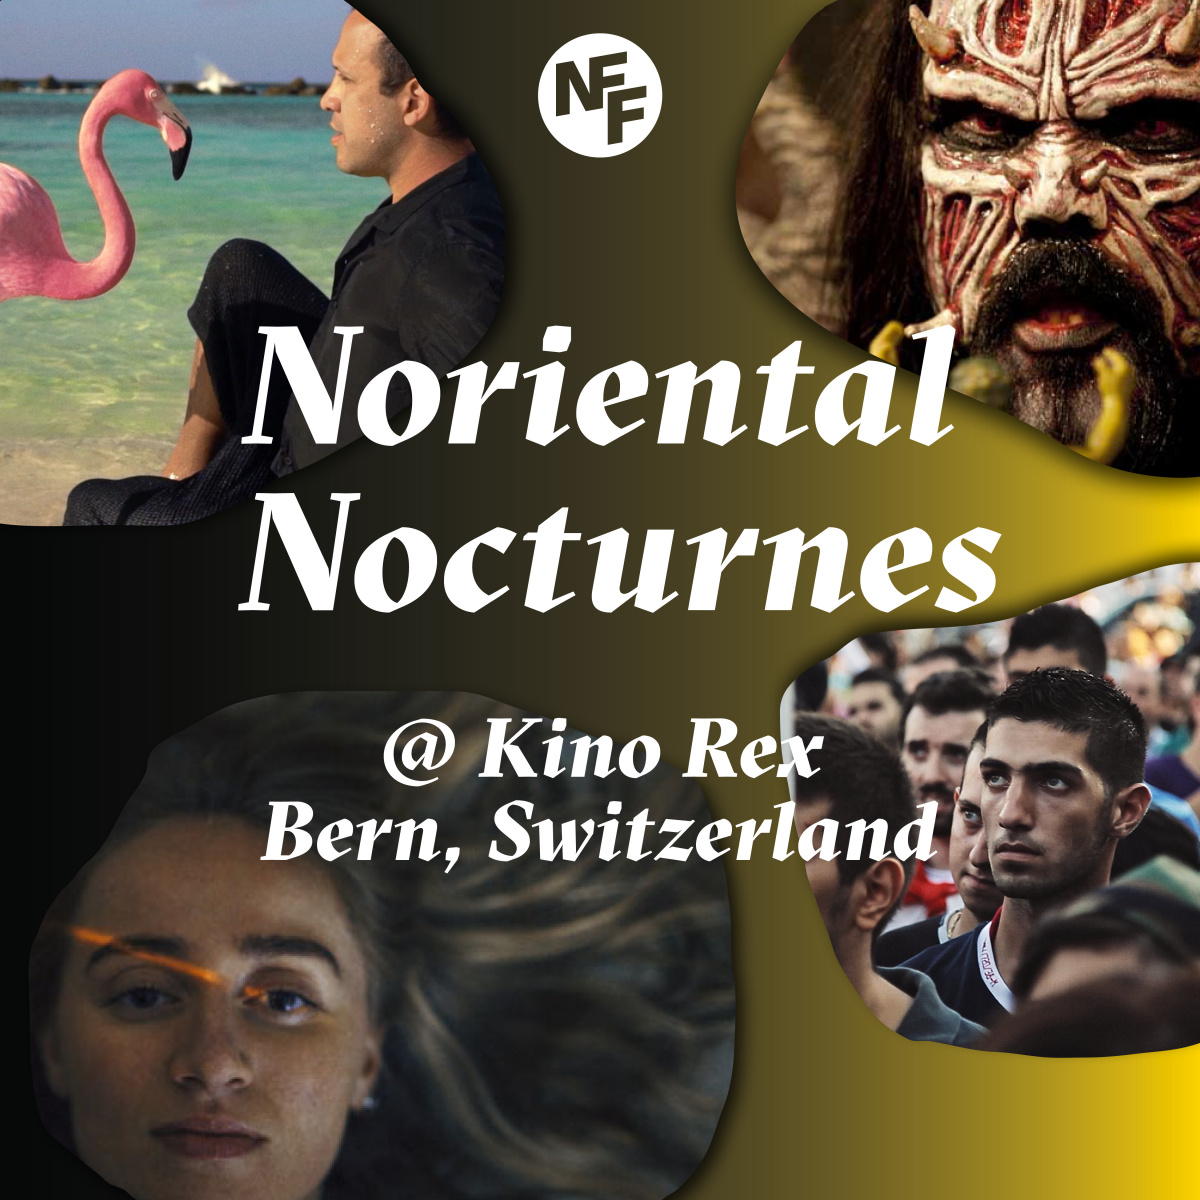 Noriental Nocturnes @ Kino Rex